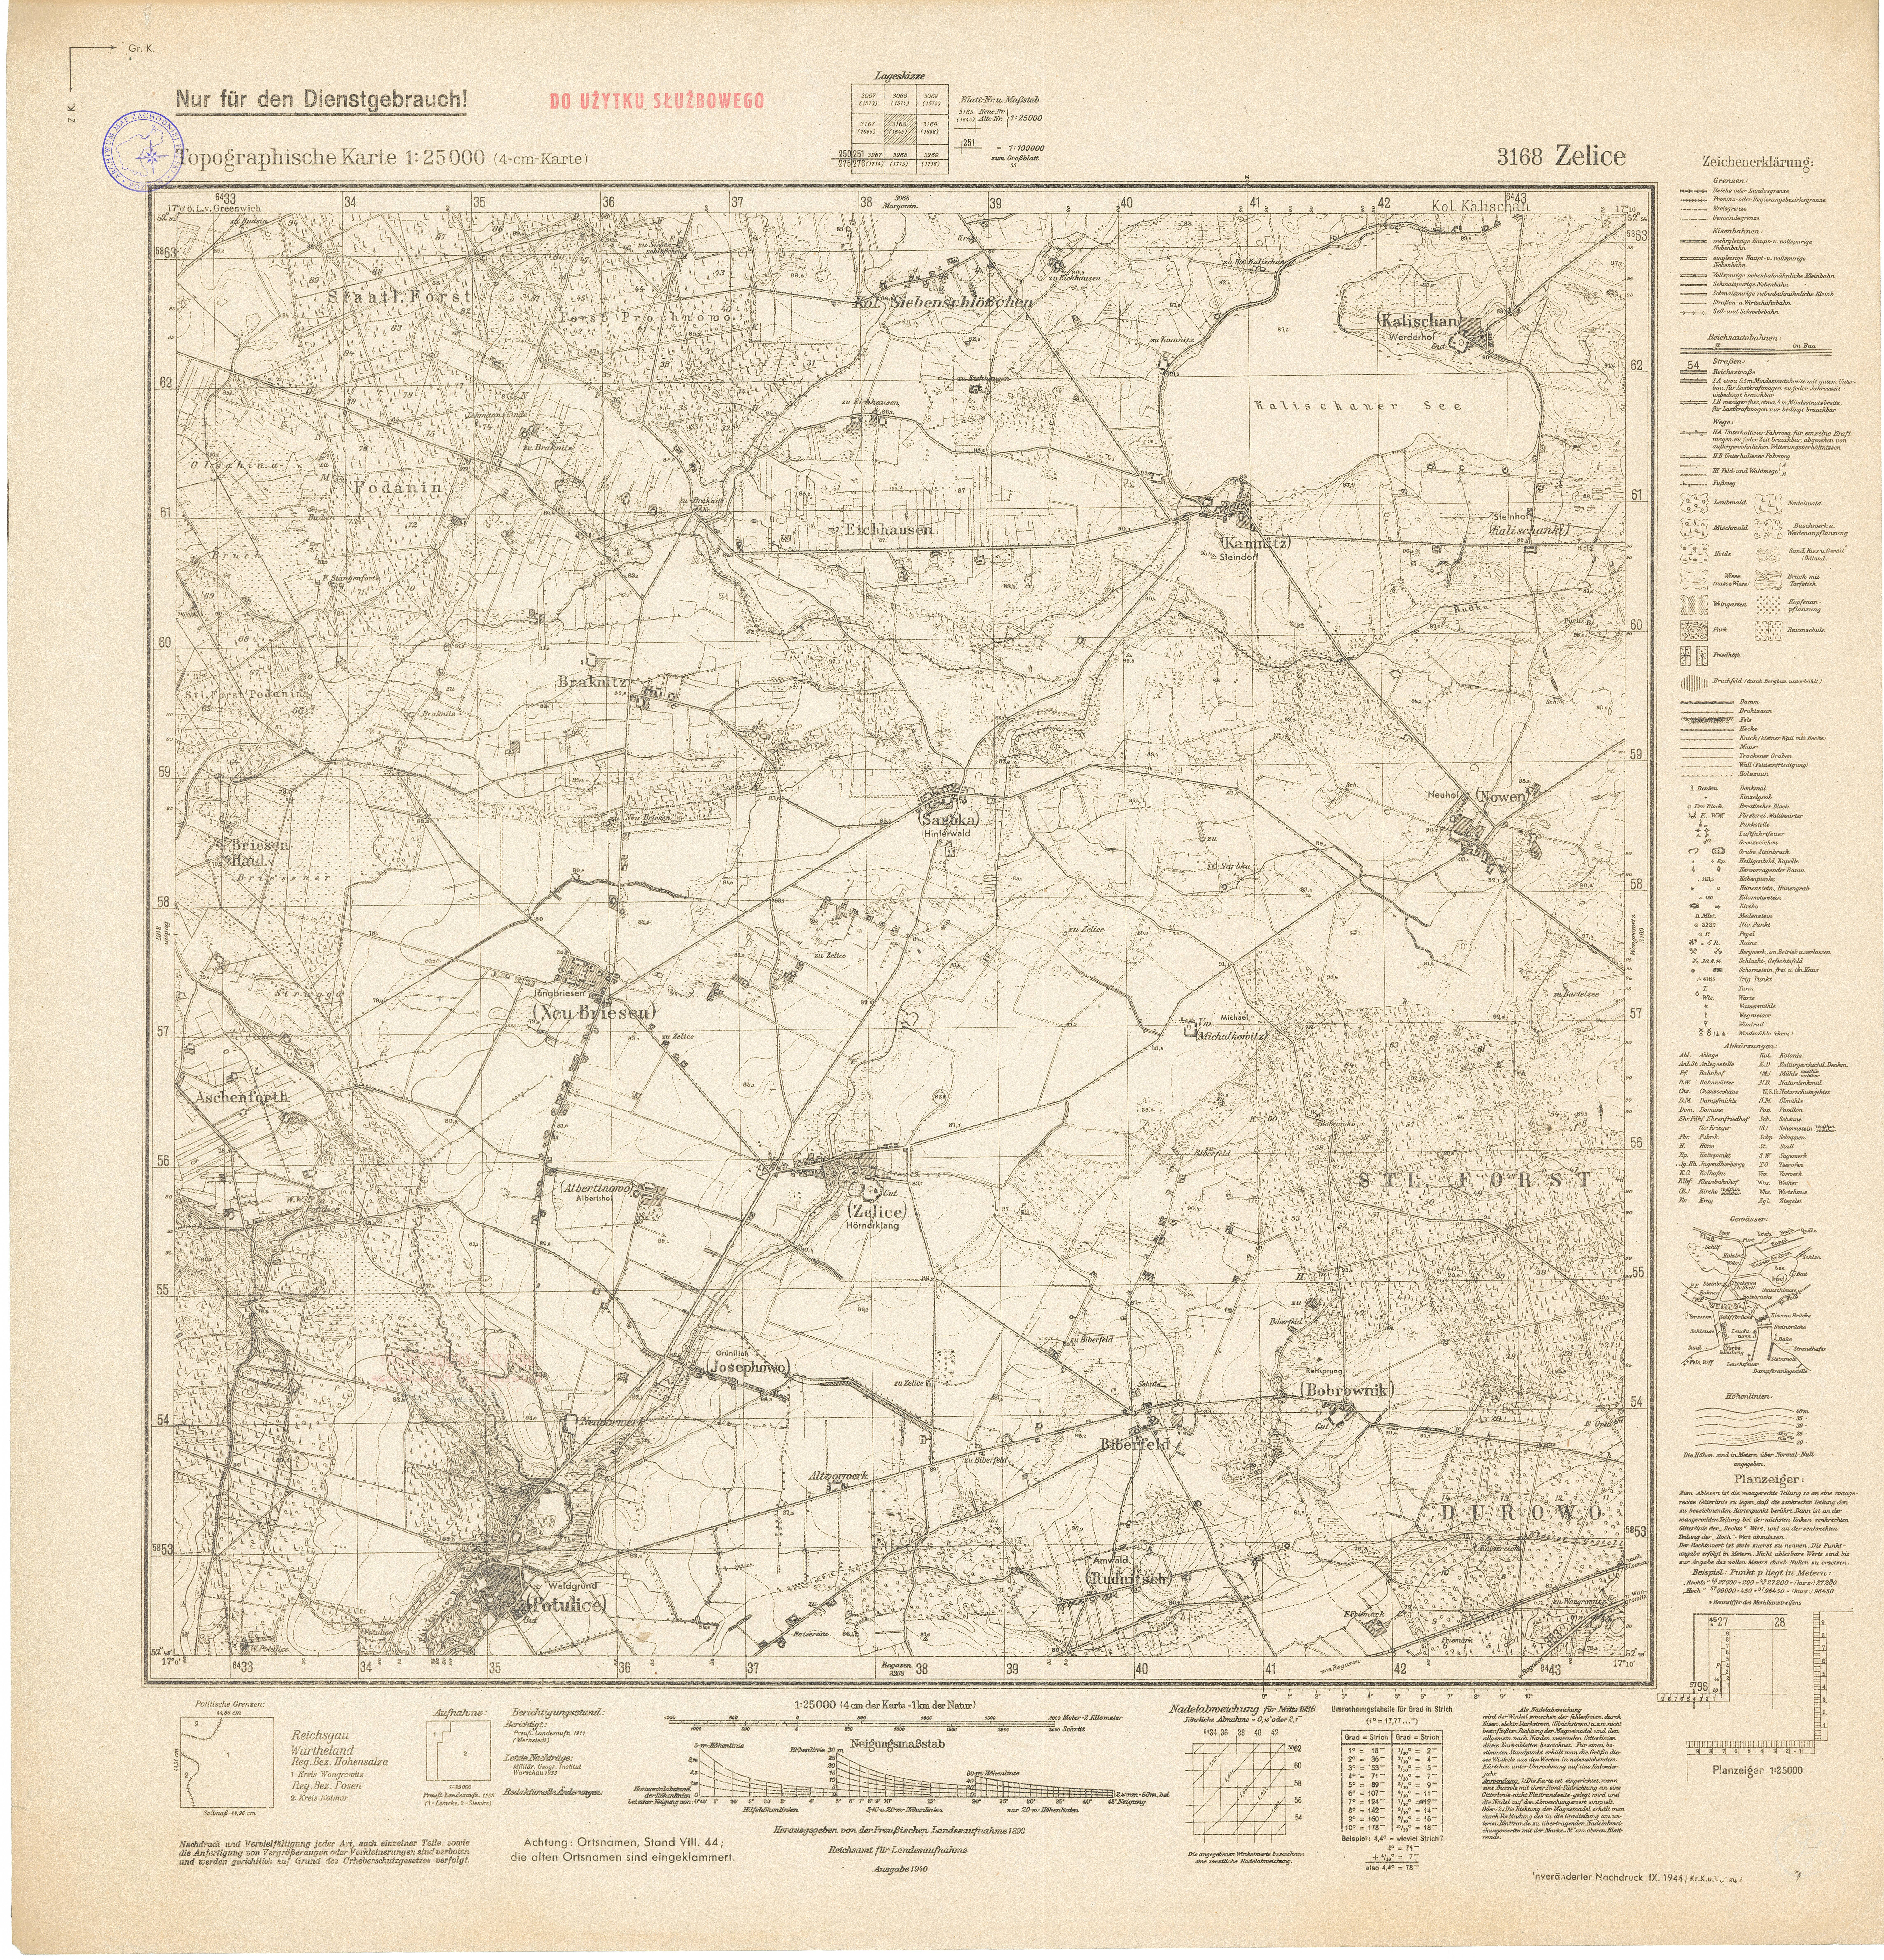 stare mapy sztabowe_różne - 3168_Zelice_1944.jpg